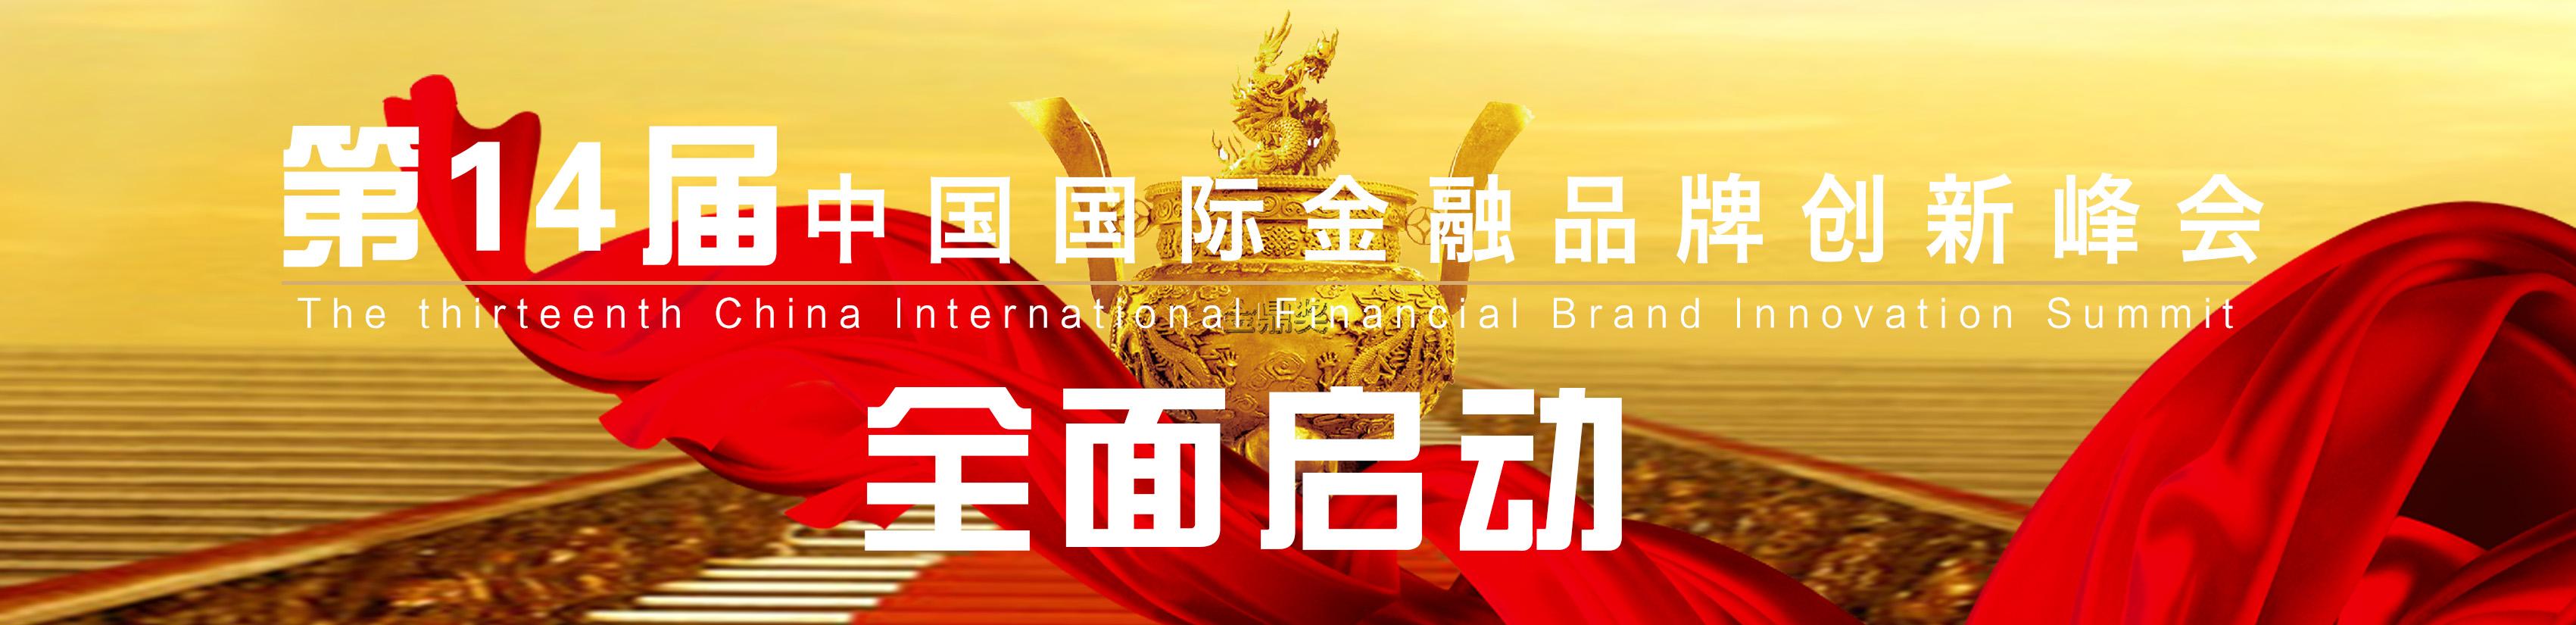 第十四届中国国际金融品牌创新峰会暨2016—2017年度中国金融业“金鼎奖”颁奖盛典